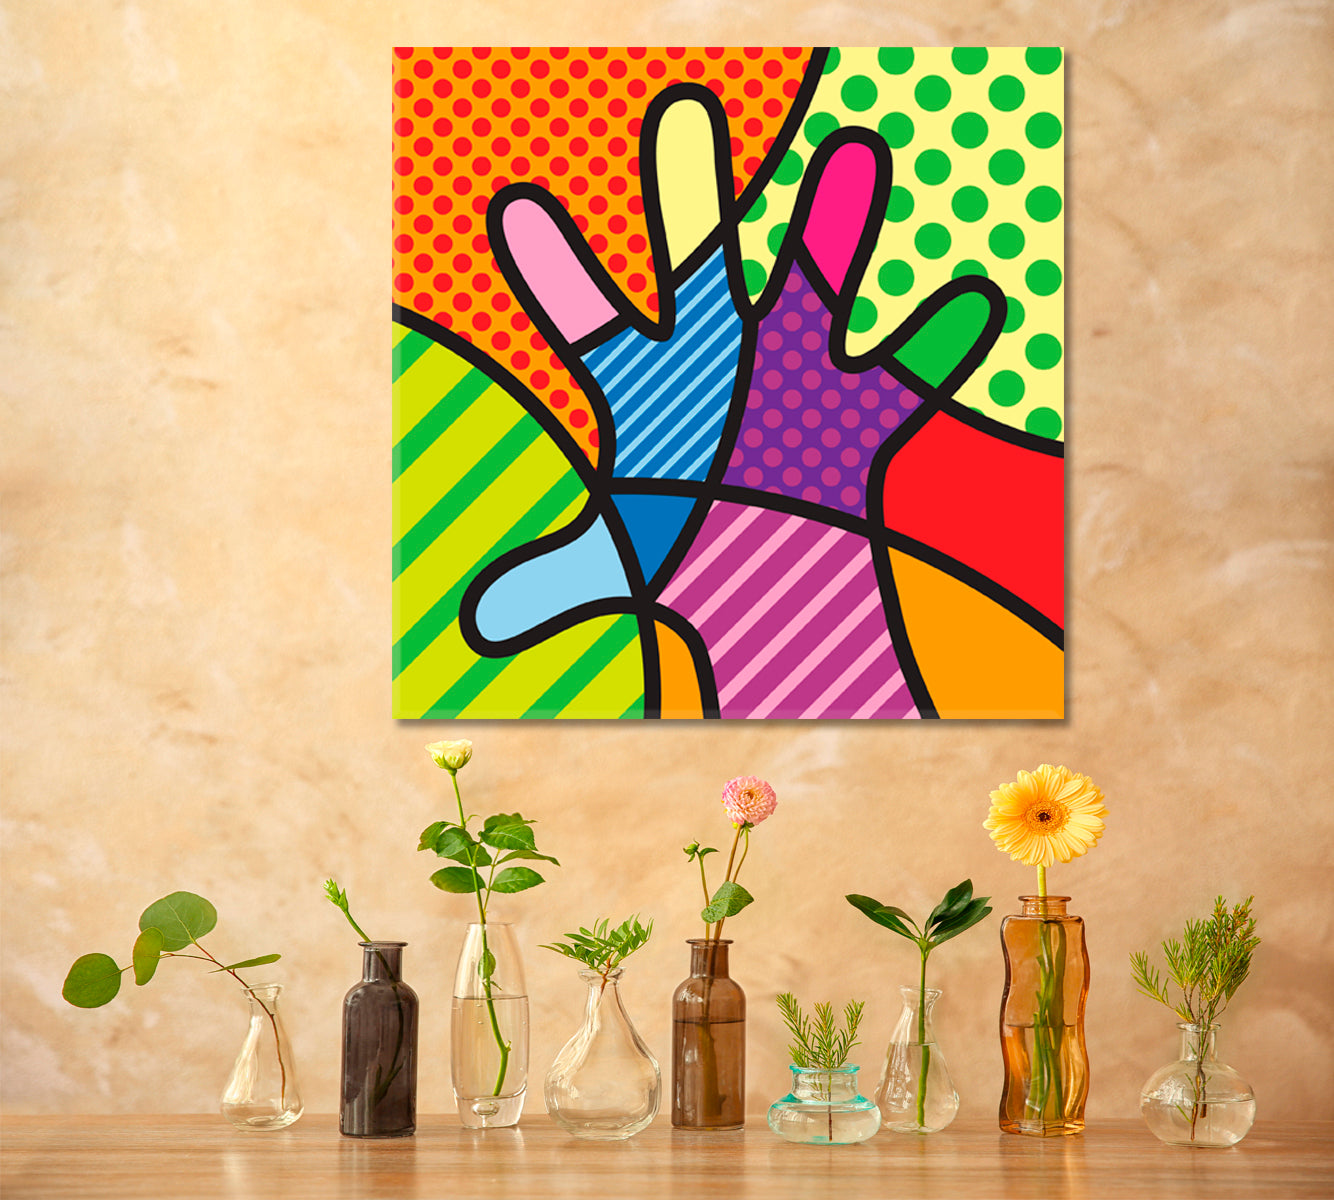 HAND Colorful Modern Pop Art Abstract Pop Art Canvas Print Artesty   